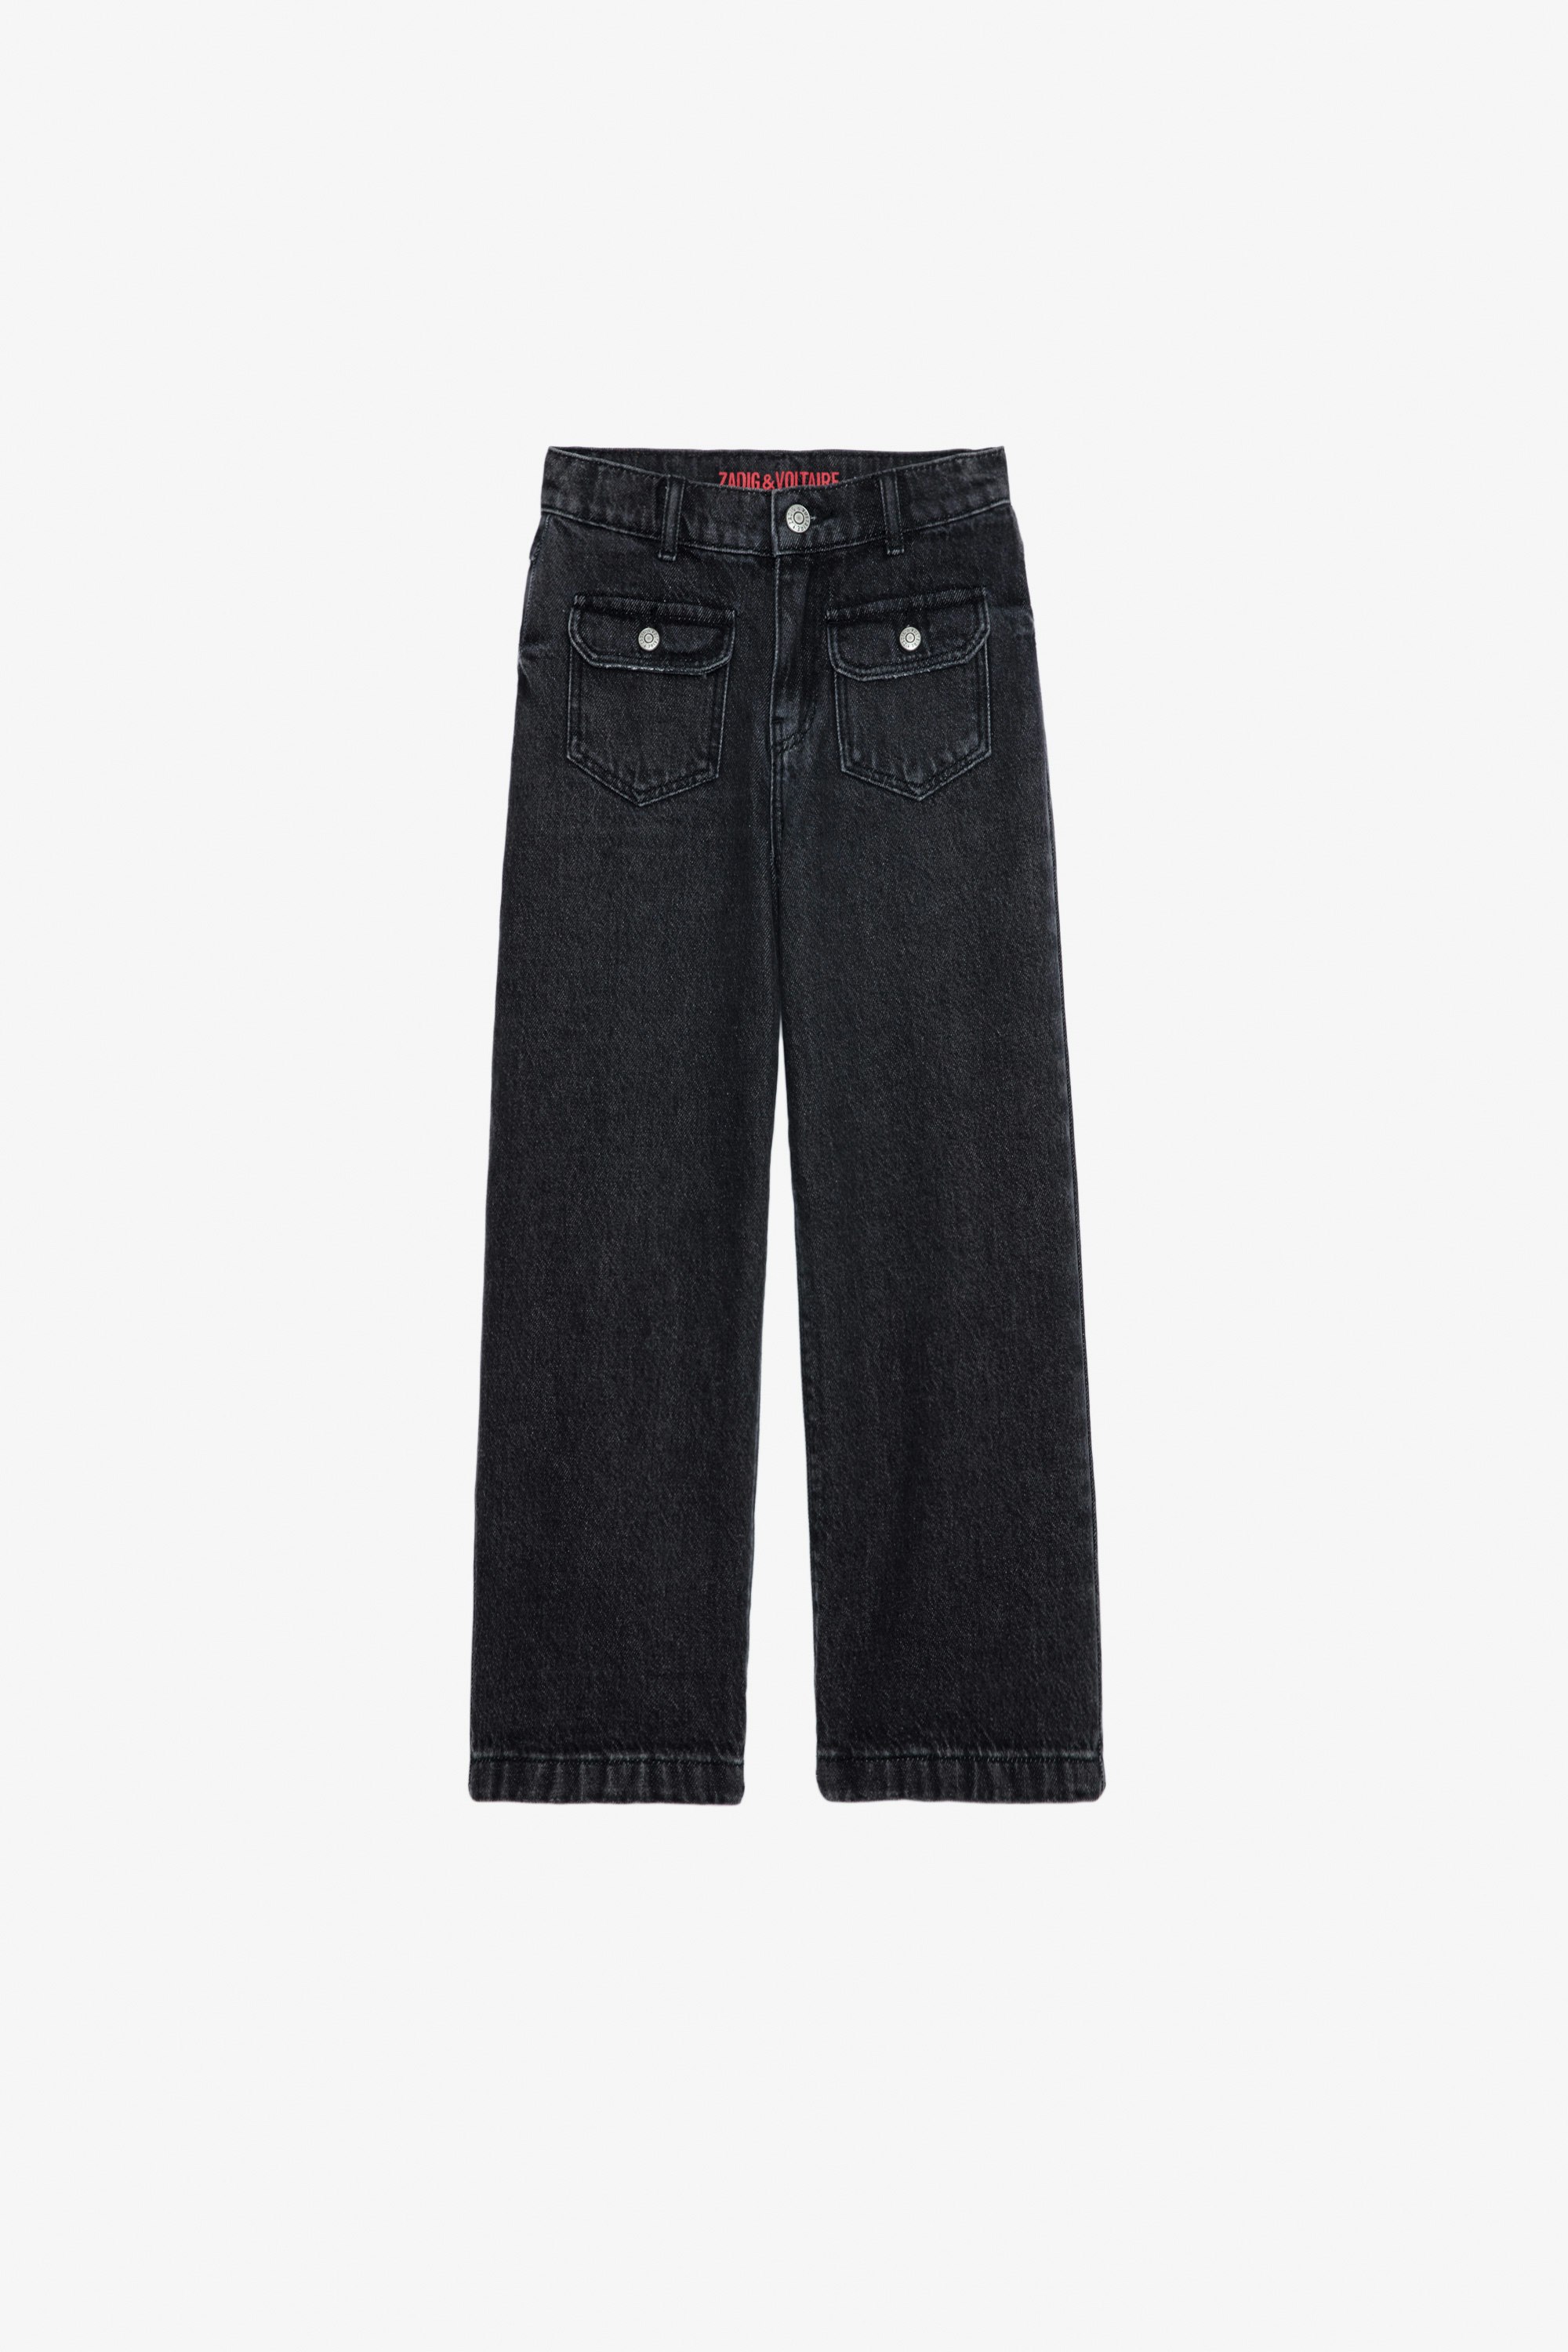 Hippie Girls’ Jeans - Girls’ black flared denim jeans.